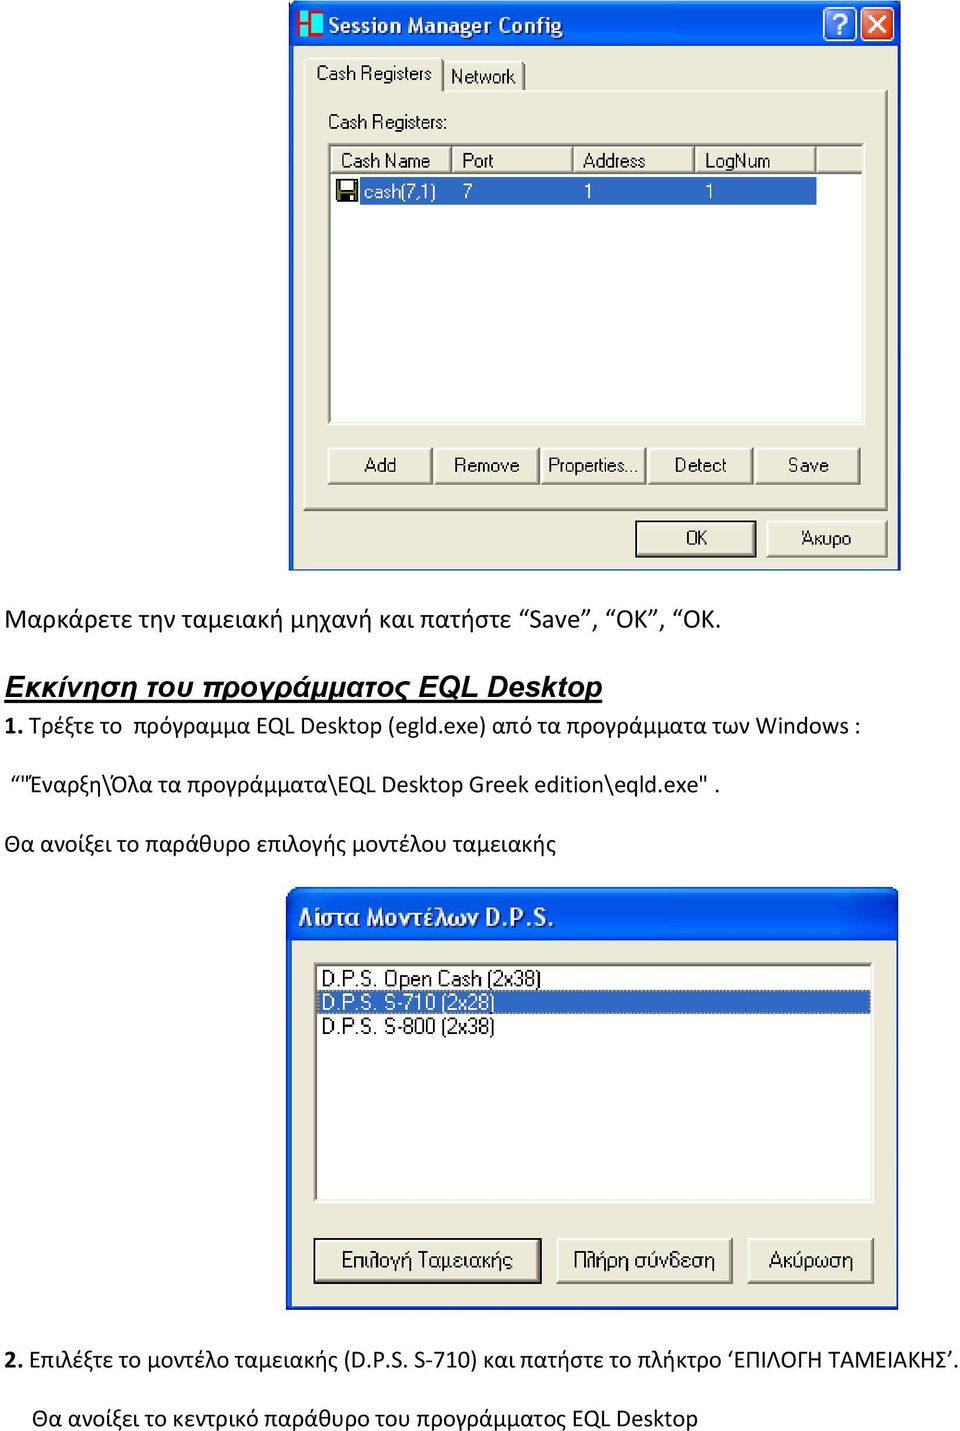 exe) από τα προγράμματα των Windows : "Έναρξη\Όλα τα προγράμματα\eql Desktop Greek edition\eqld.exe".